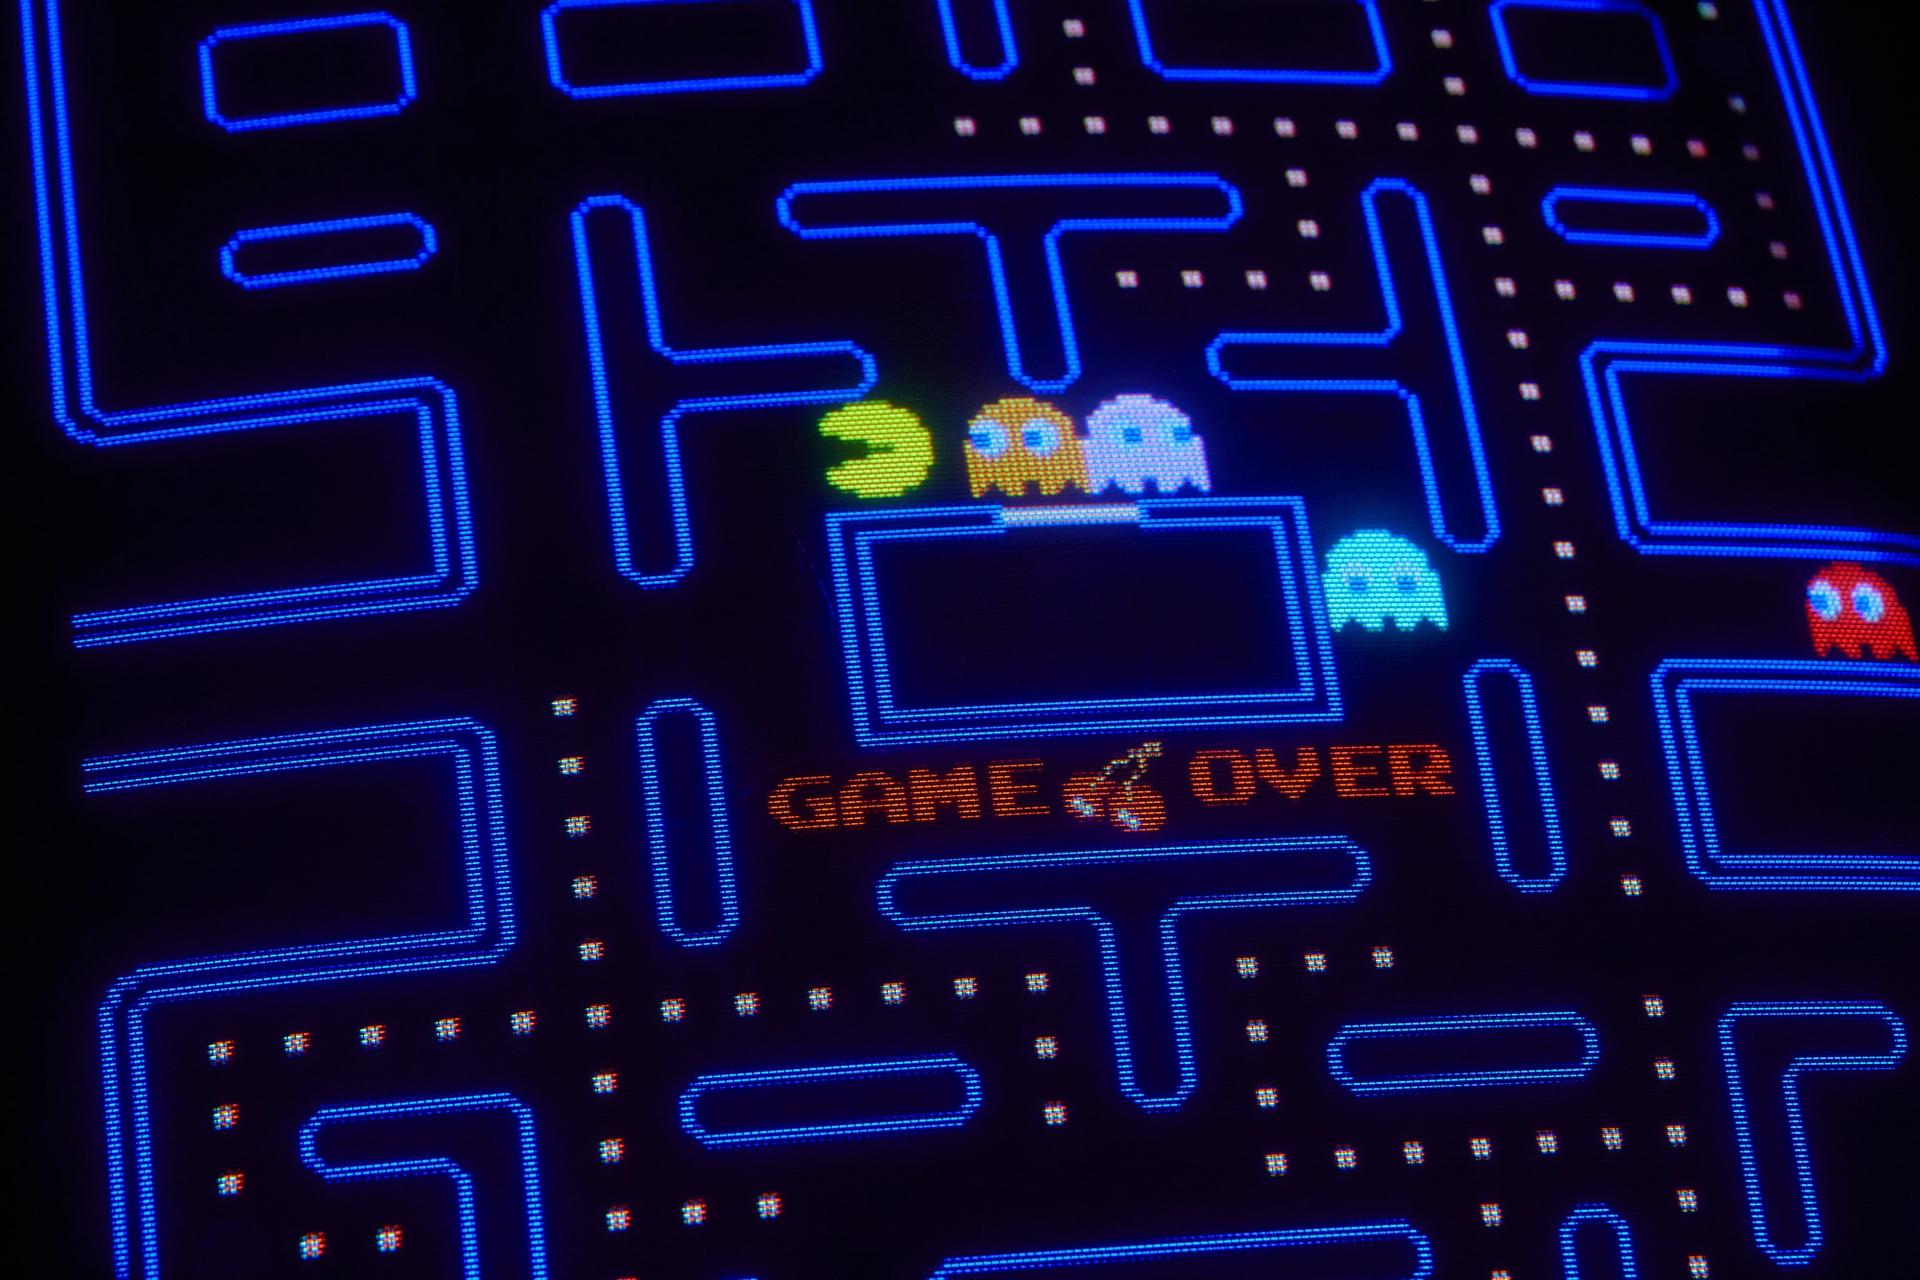 Pacman Screenshot